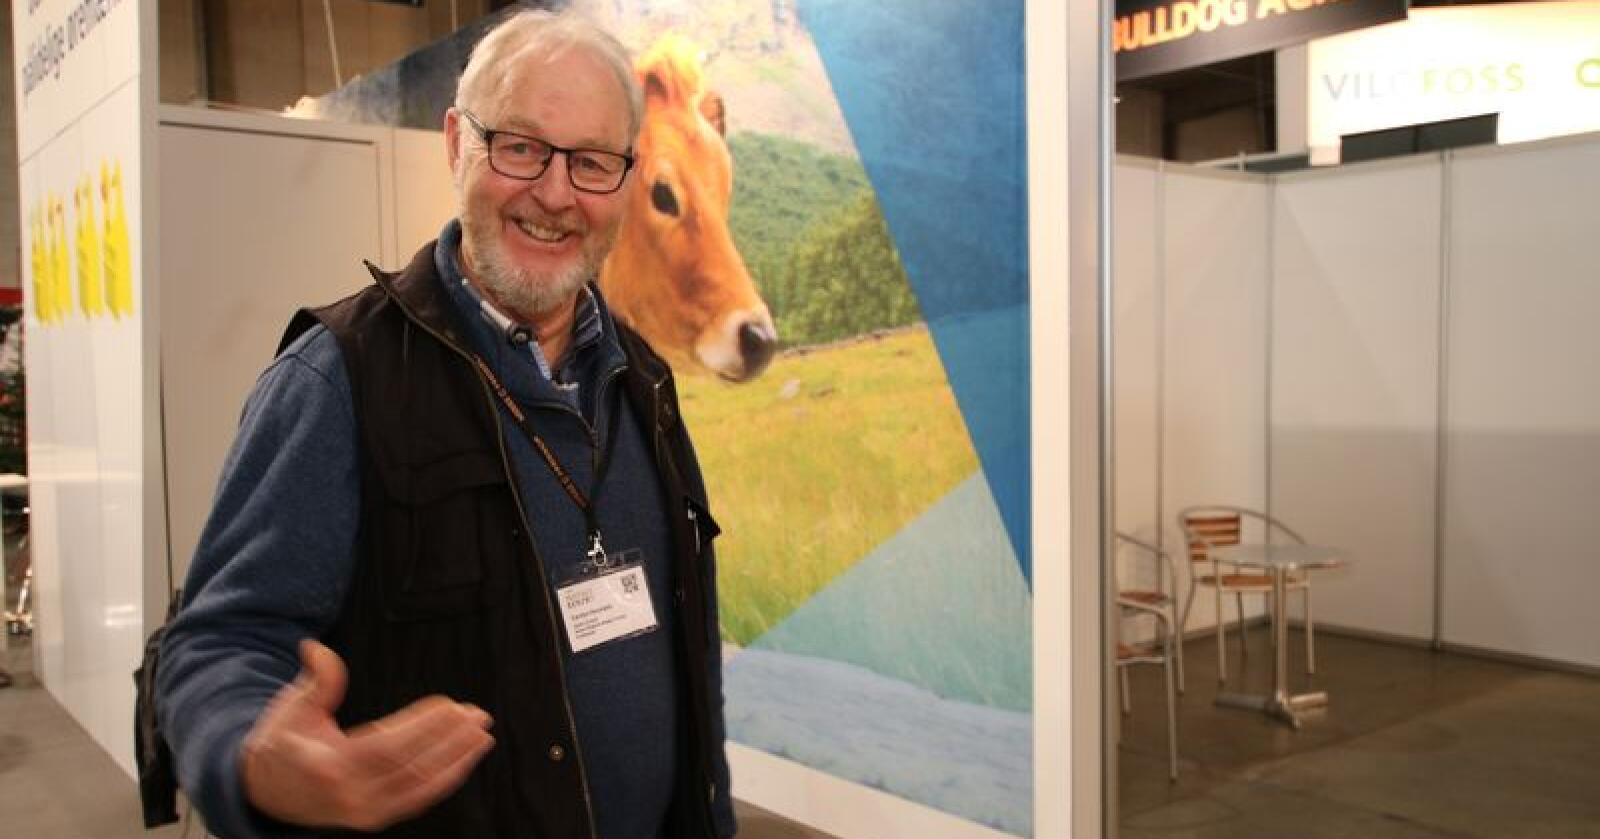 Fôringsrådgiver Carsten Houmann er bekymret for at dårlig grovfôr skal slanke norske kyr syke. Foto: Dag Idar Jøsang